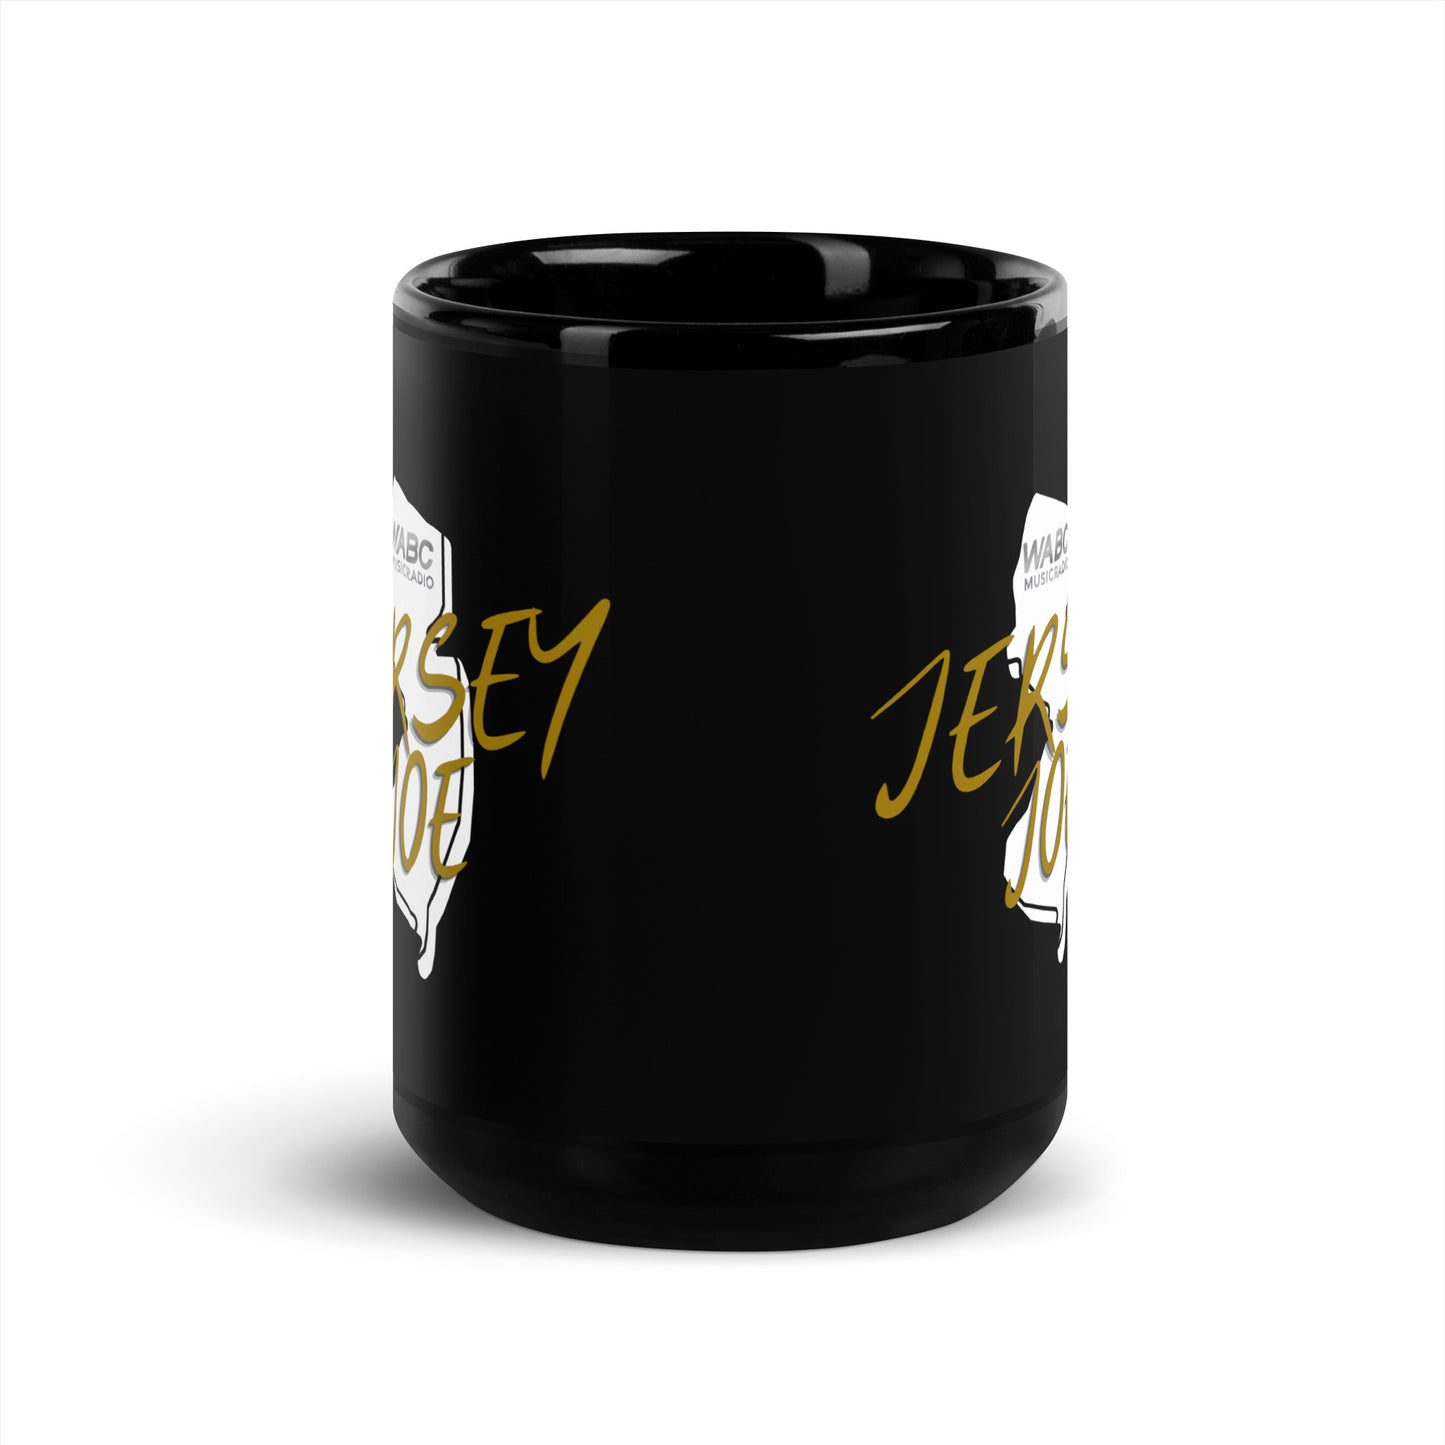 Jersey Joe Black Glossy Mug